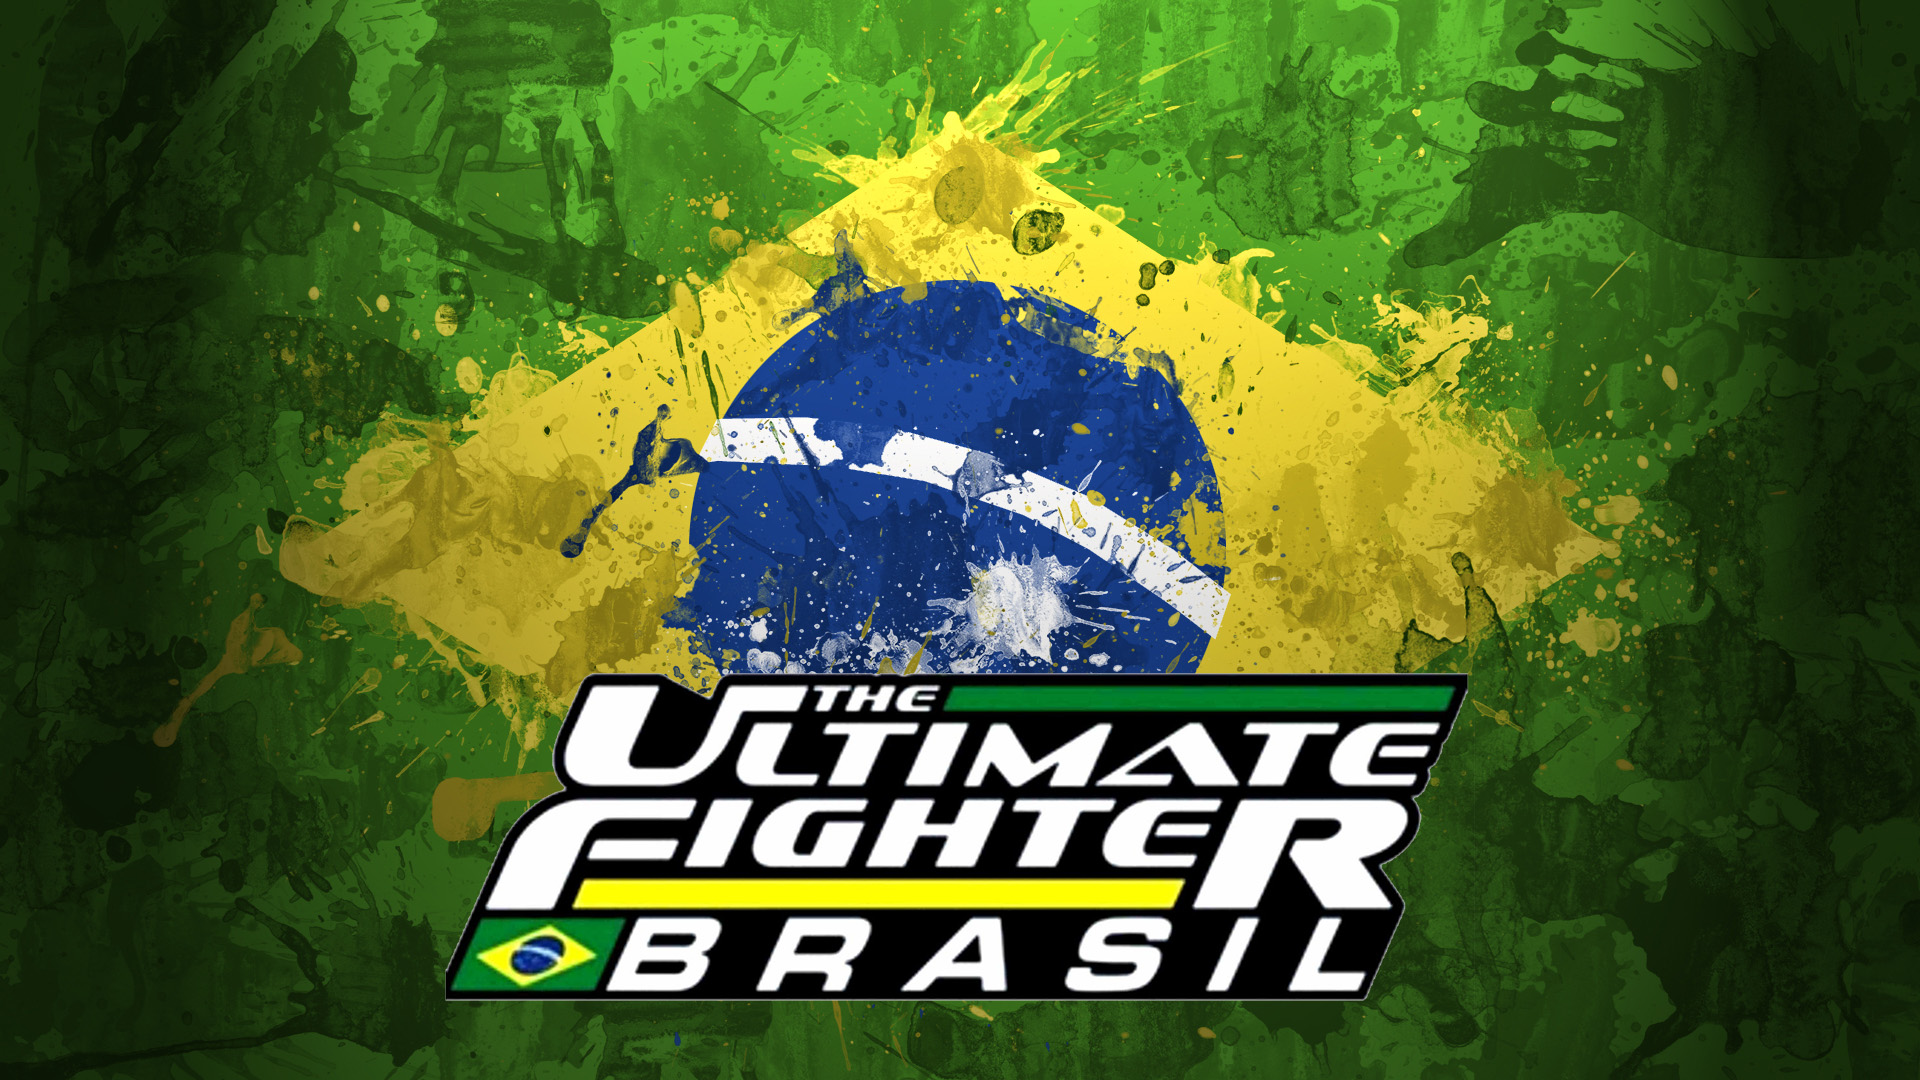 UFC 147